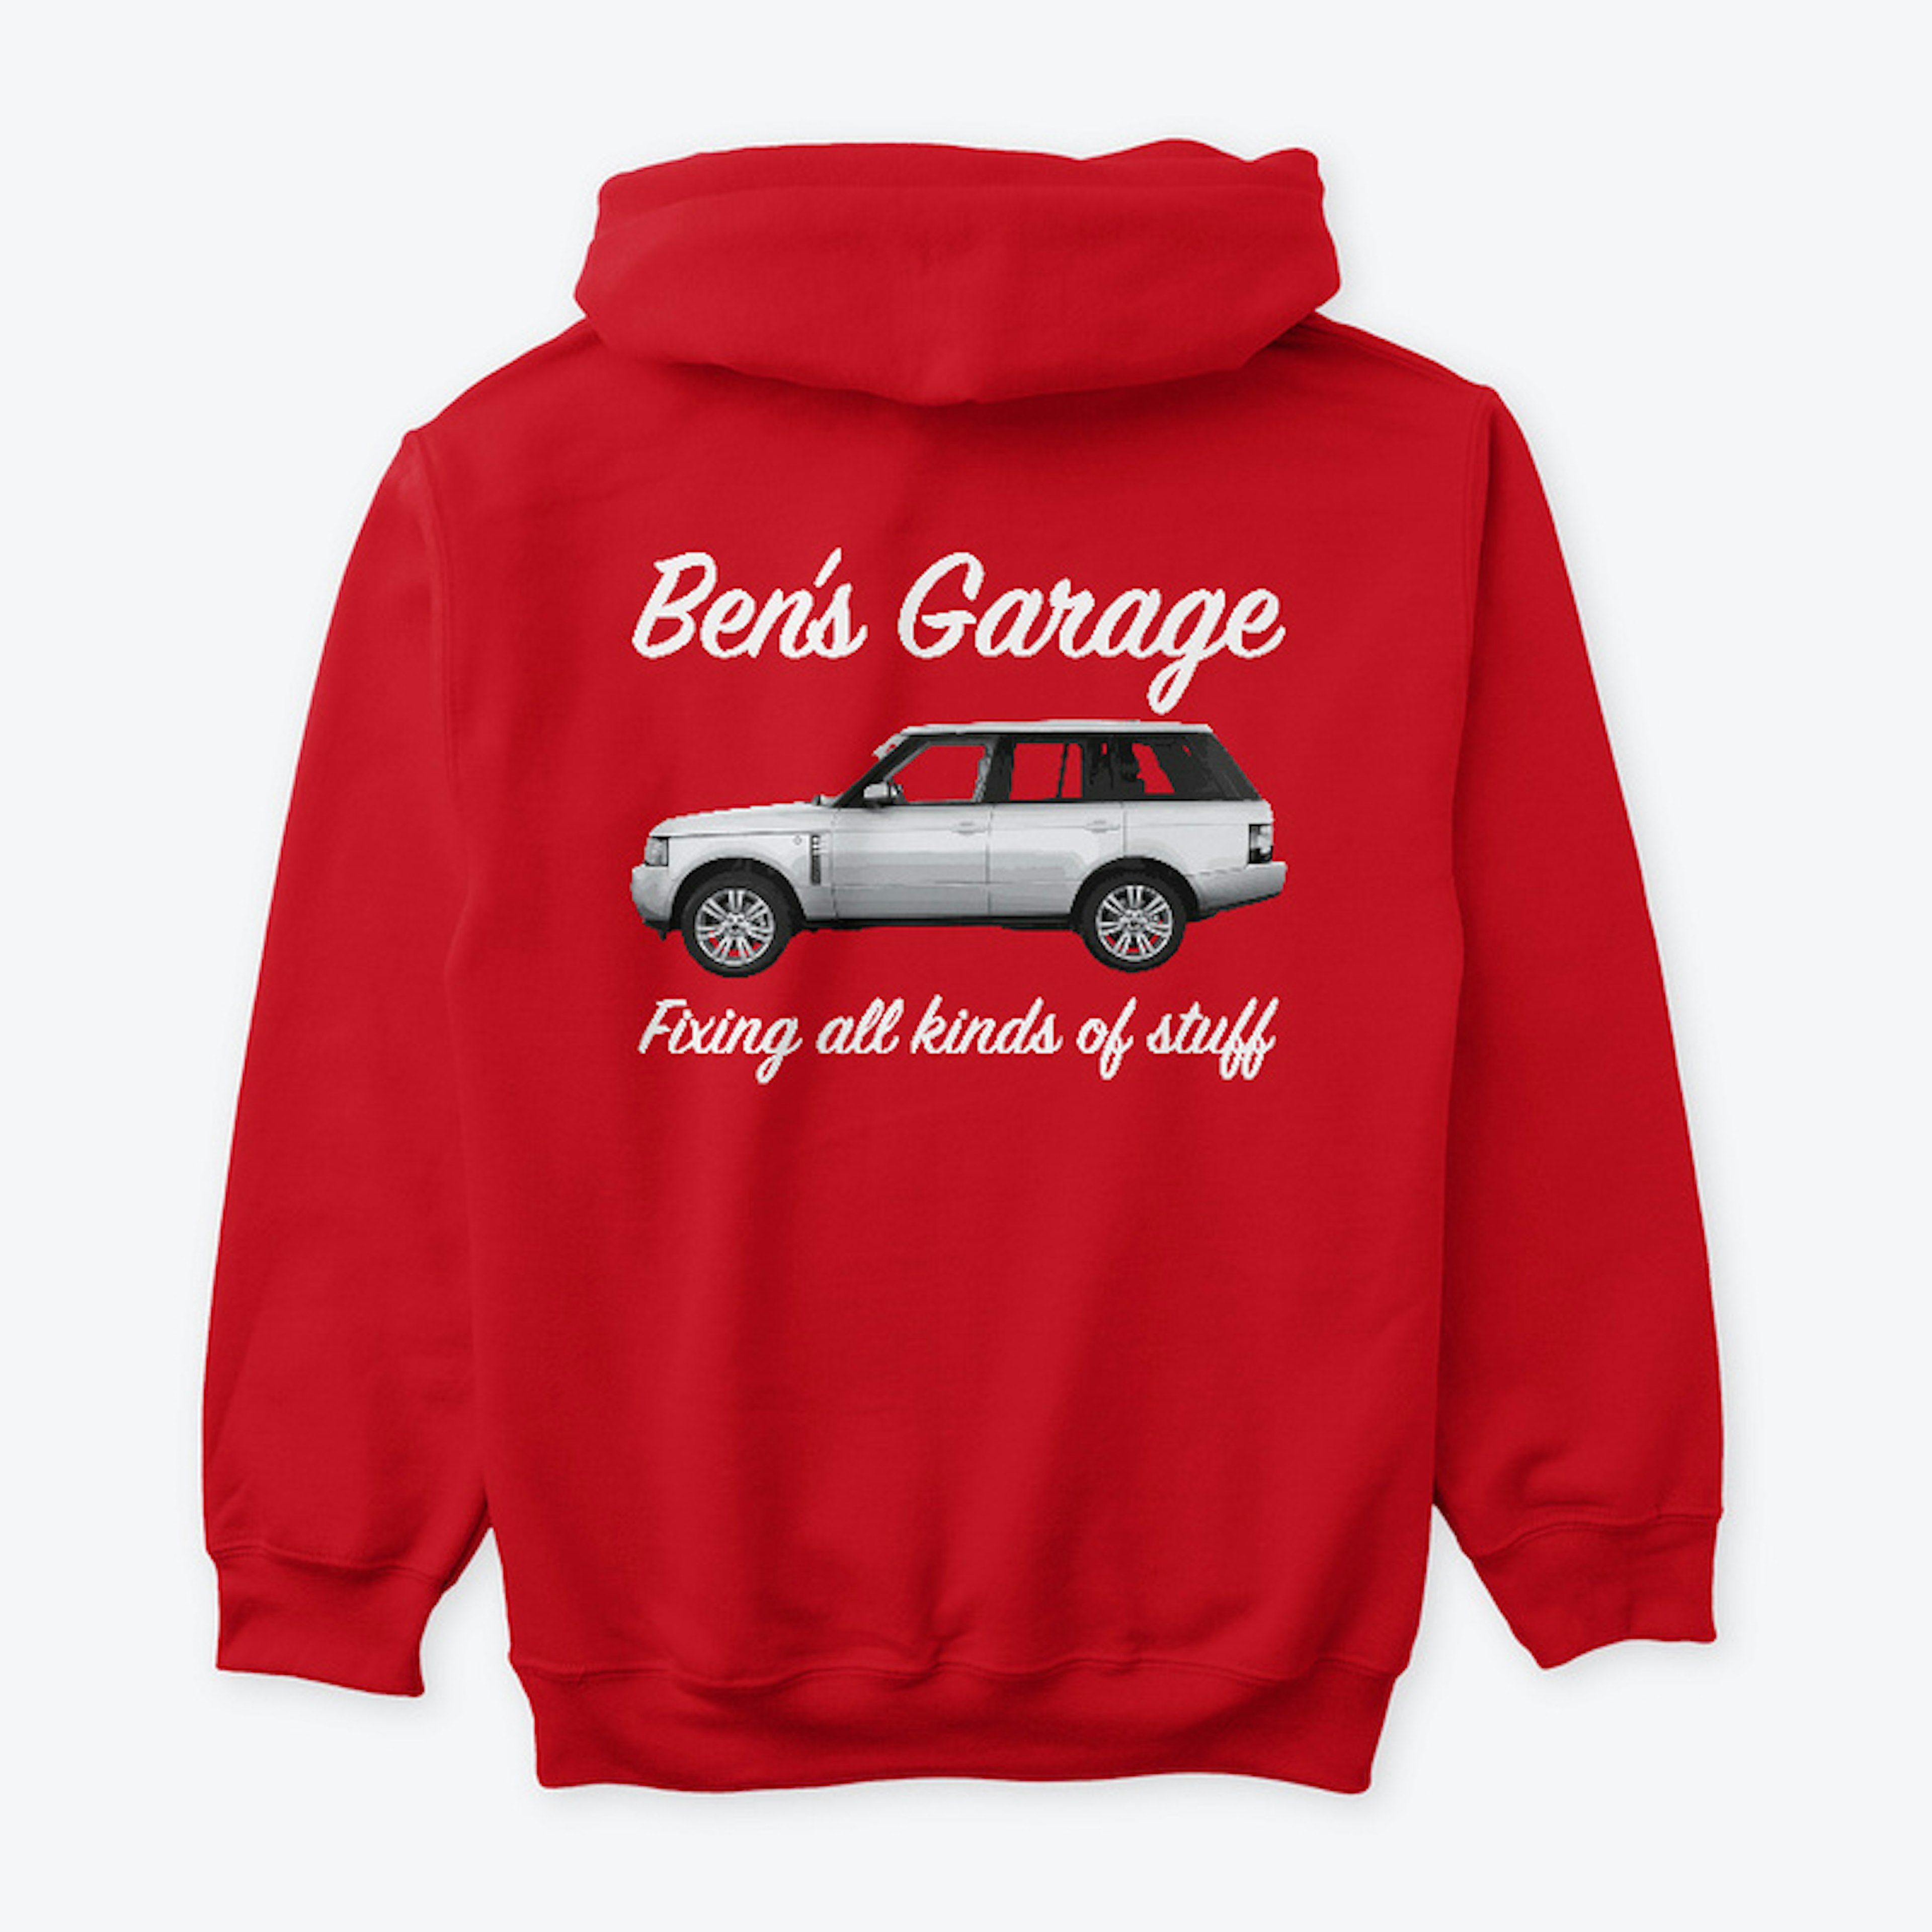 Ben's Garage Range Rover Hoodie